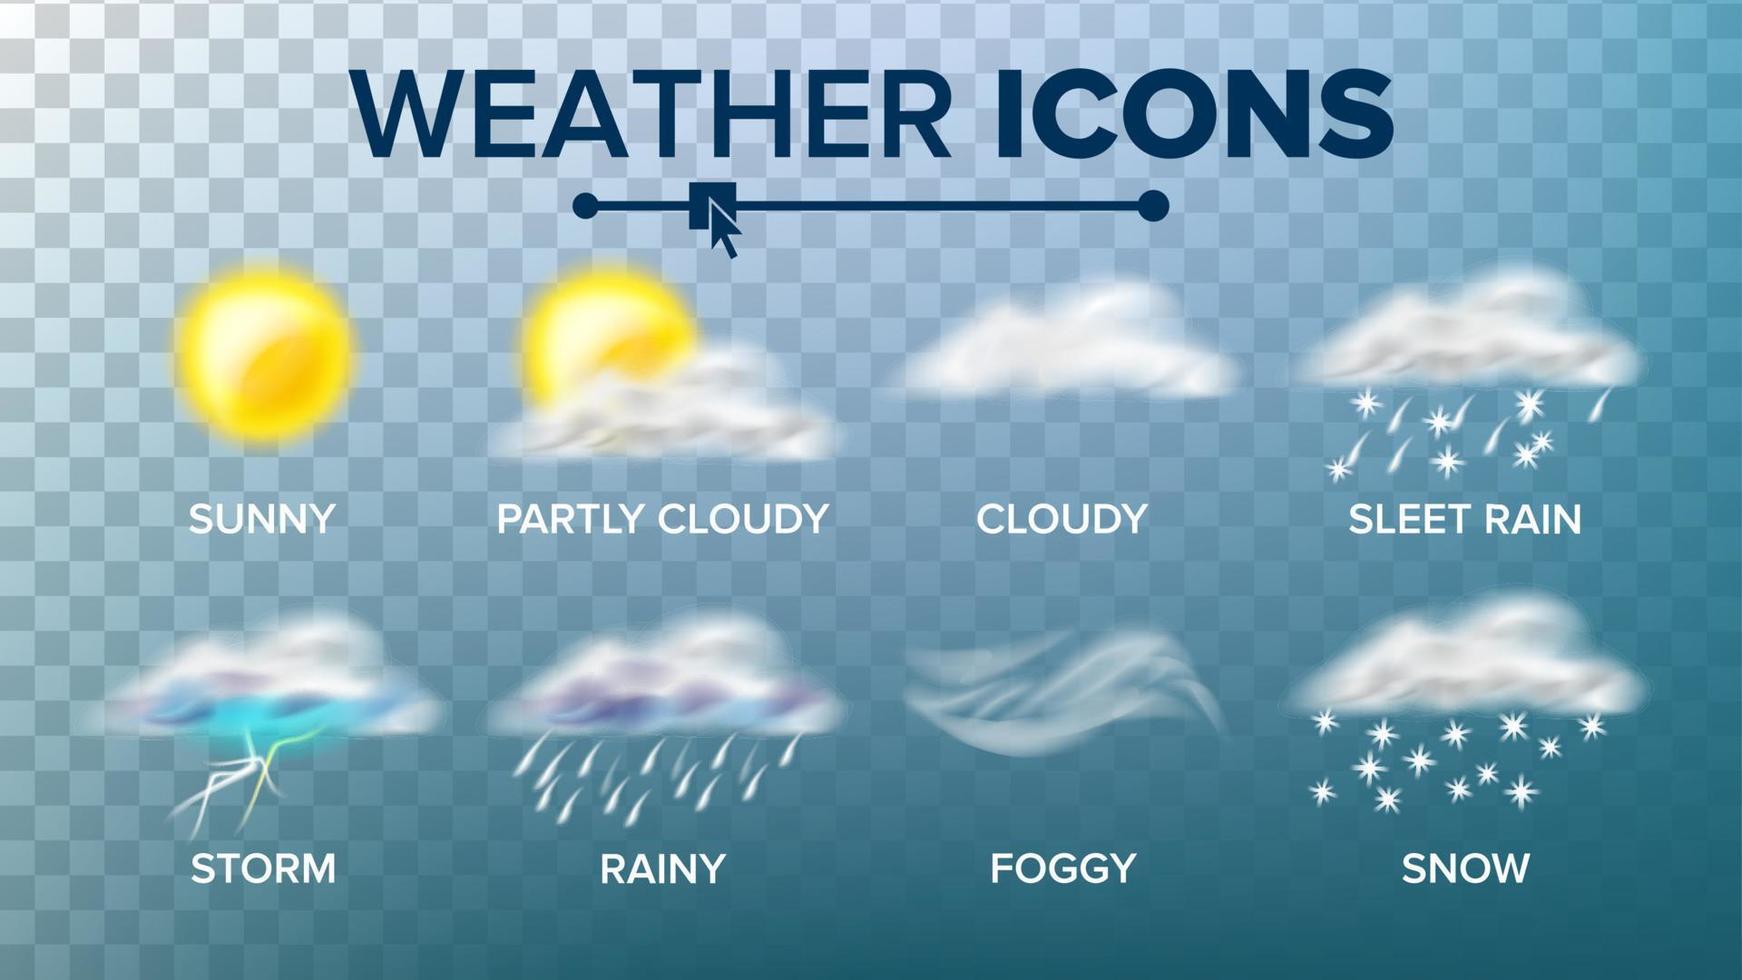 vetor de conjunto de ícones do tempo. ensolarado, nublado tempestade, chuvoso, neve, nebuloso. bom para web, aplicativo móvel. isolado na ilustração de fundo transparente